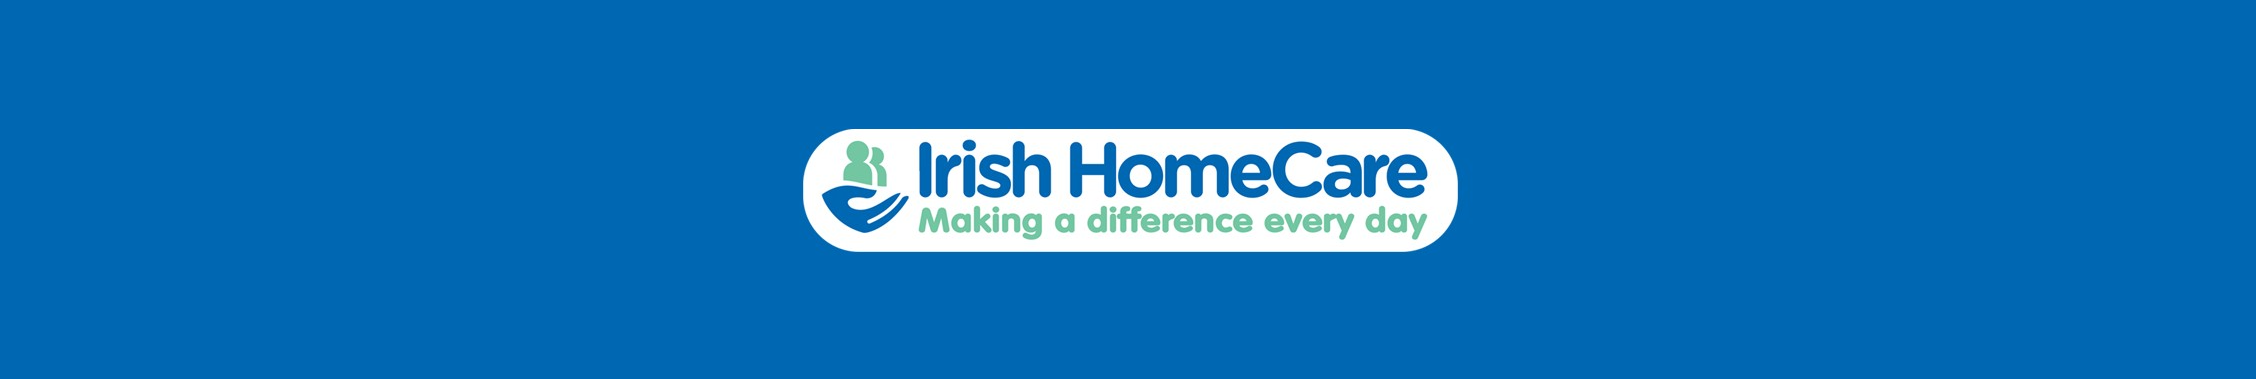 Irish Homecare background